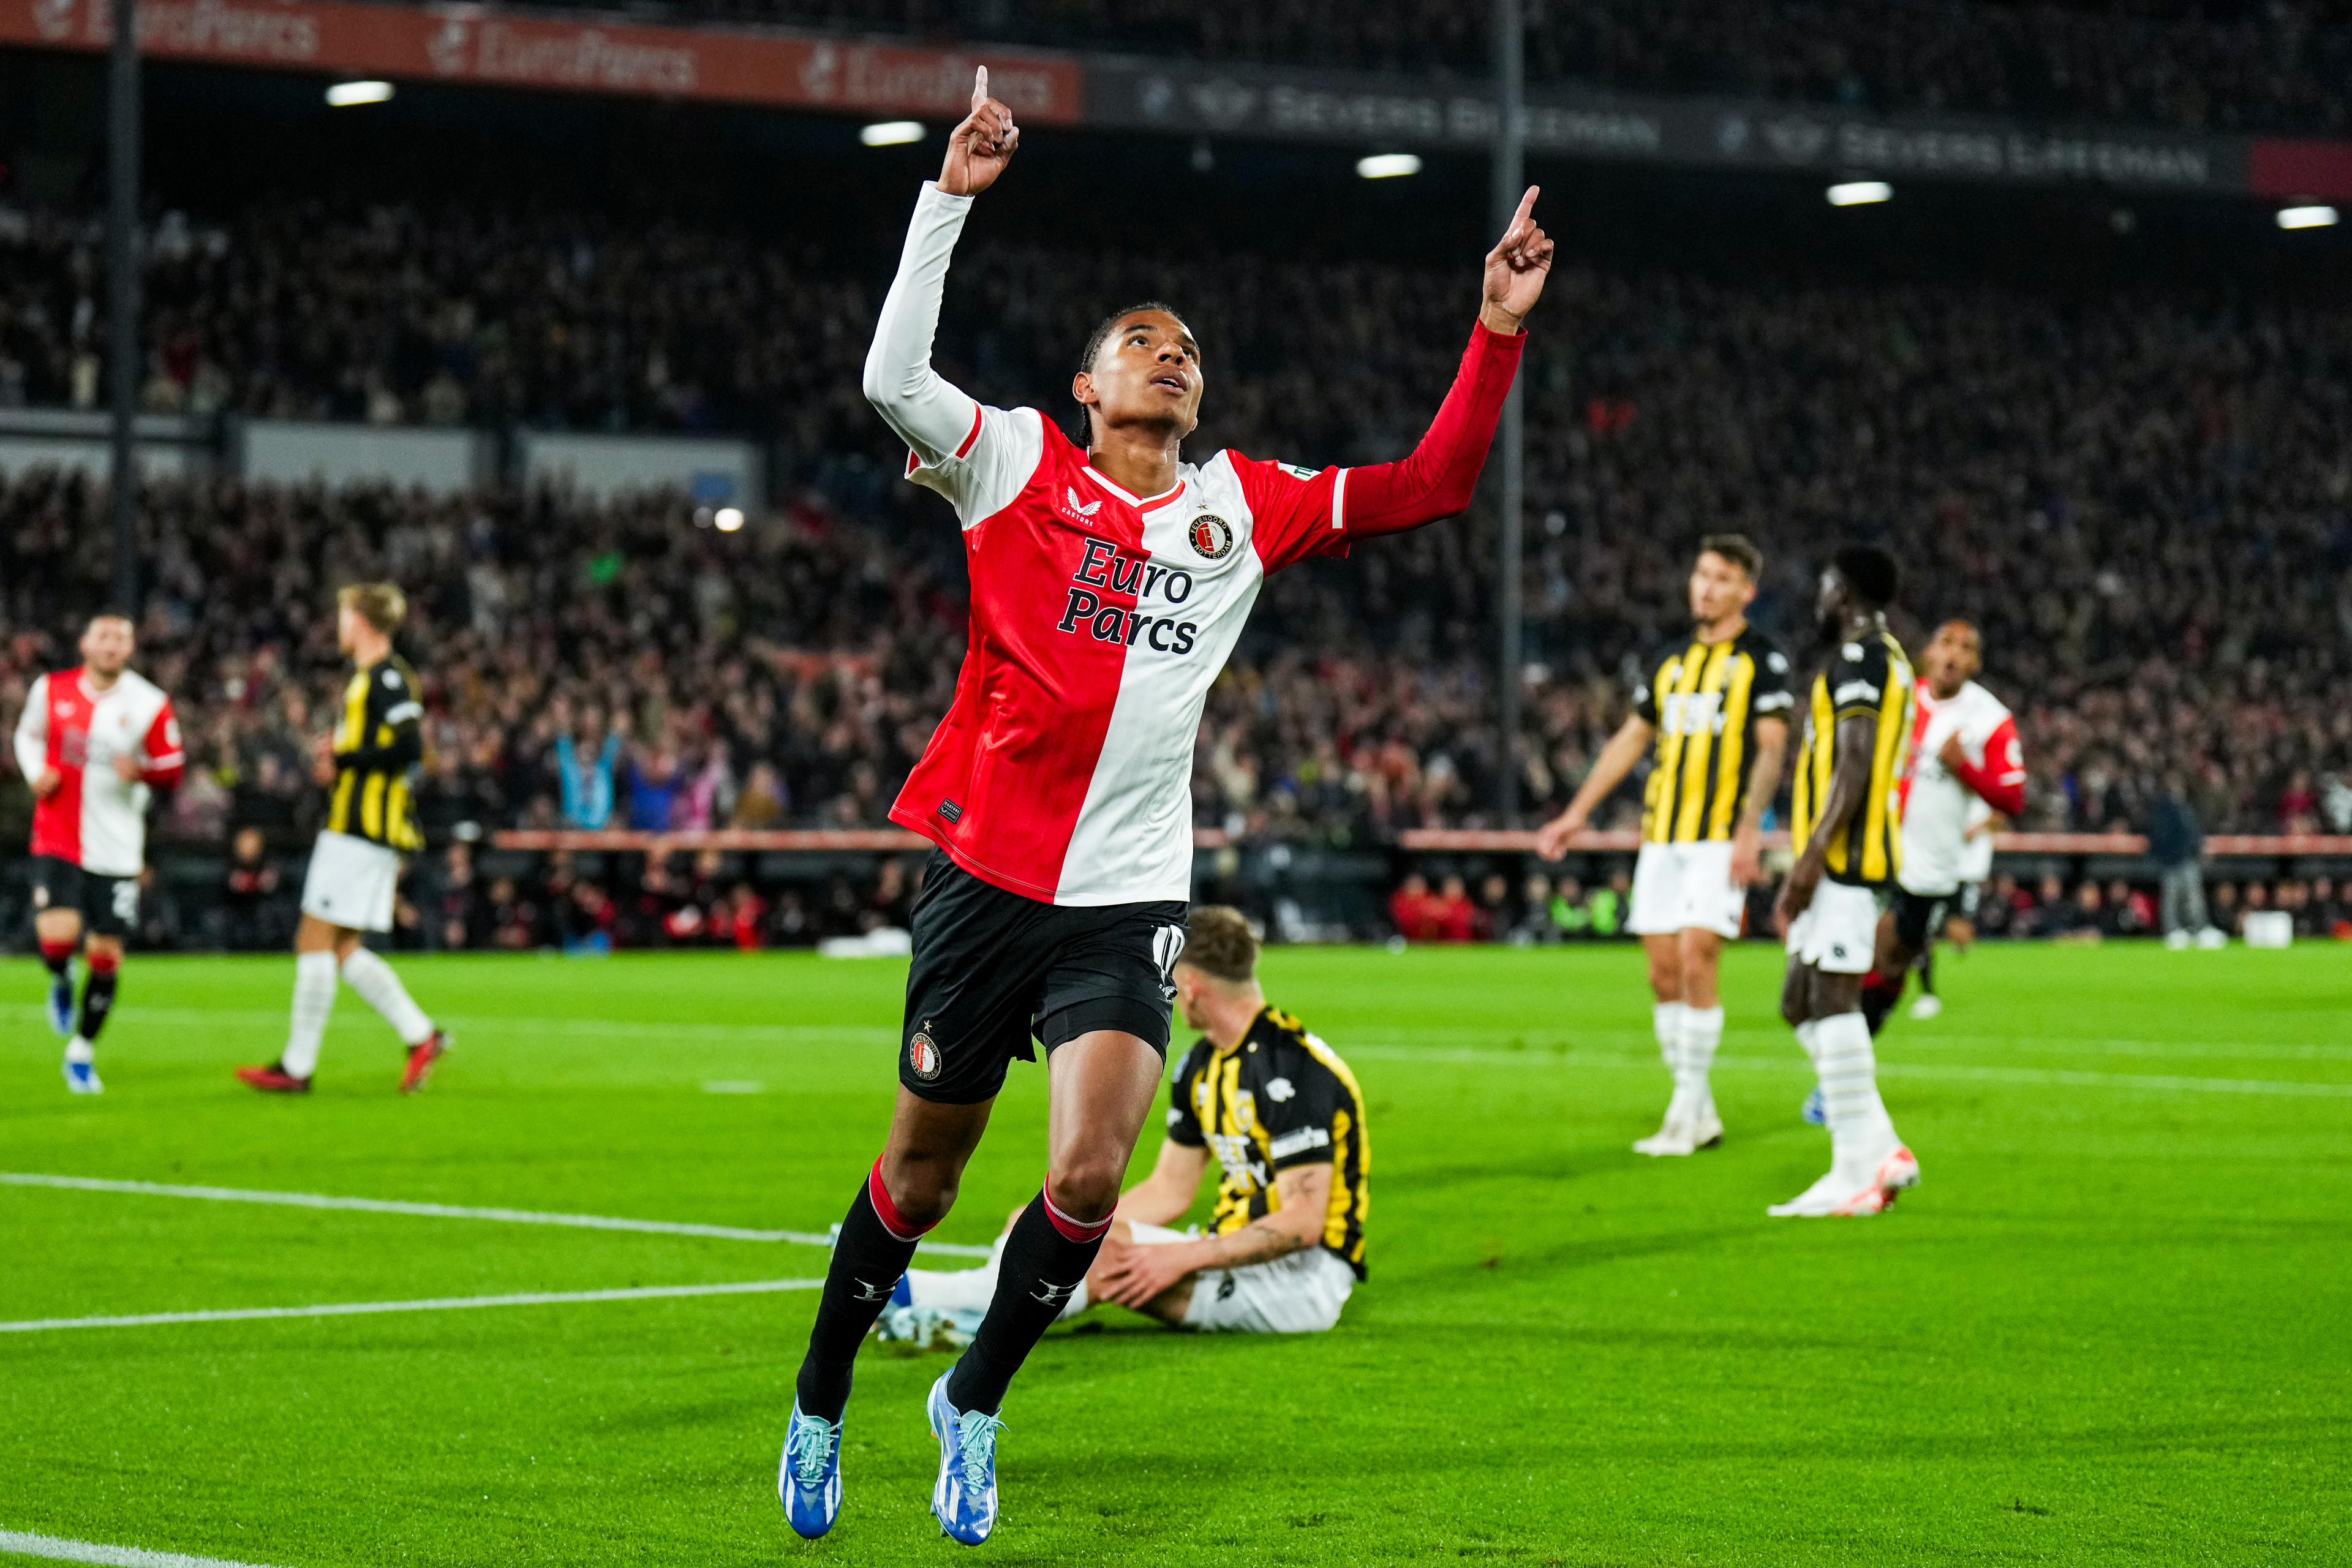 Samenvatting Feyenoord - Vitesse (4-0)